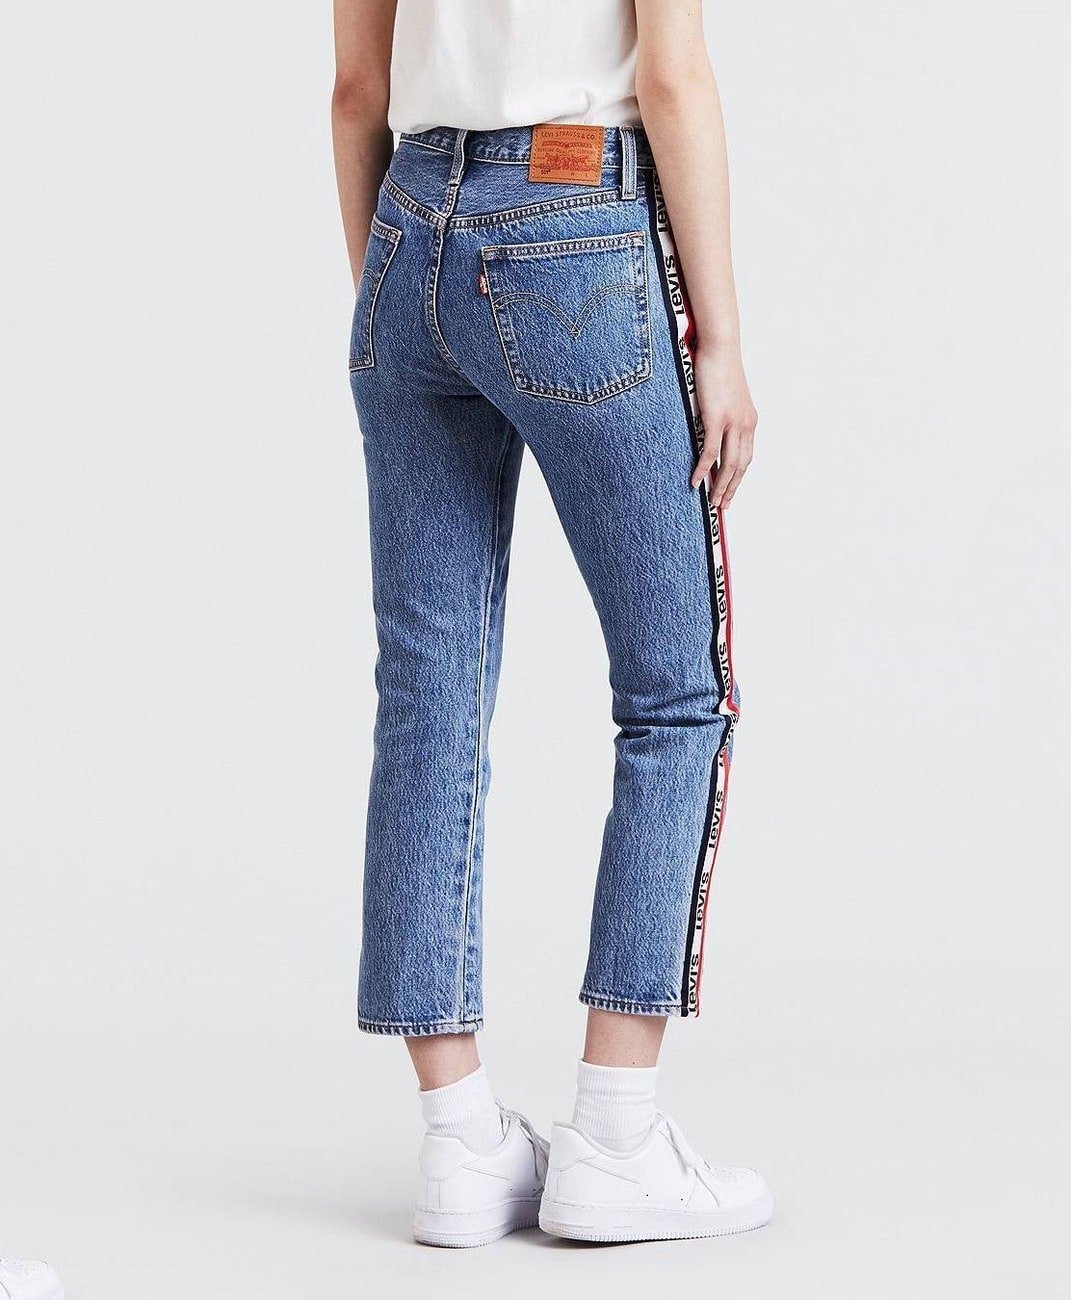 Левайс модели джинсов